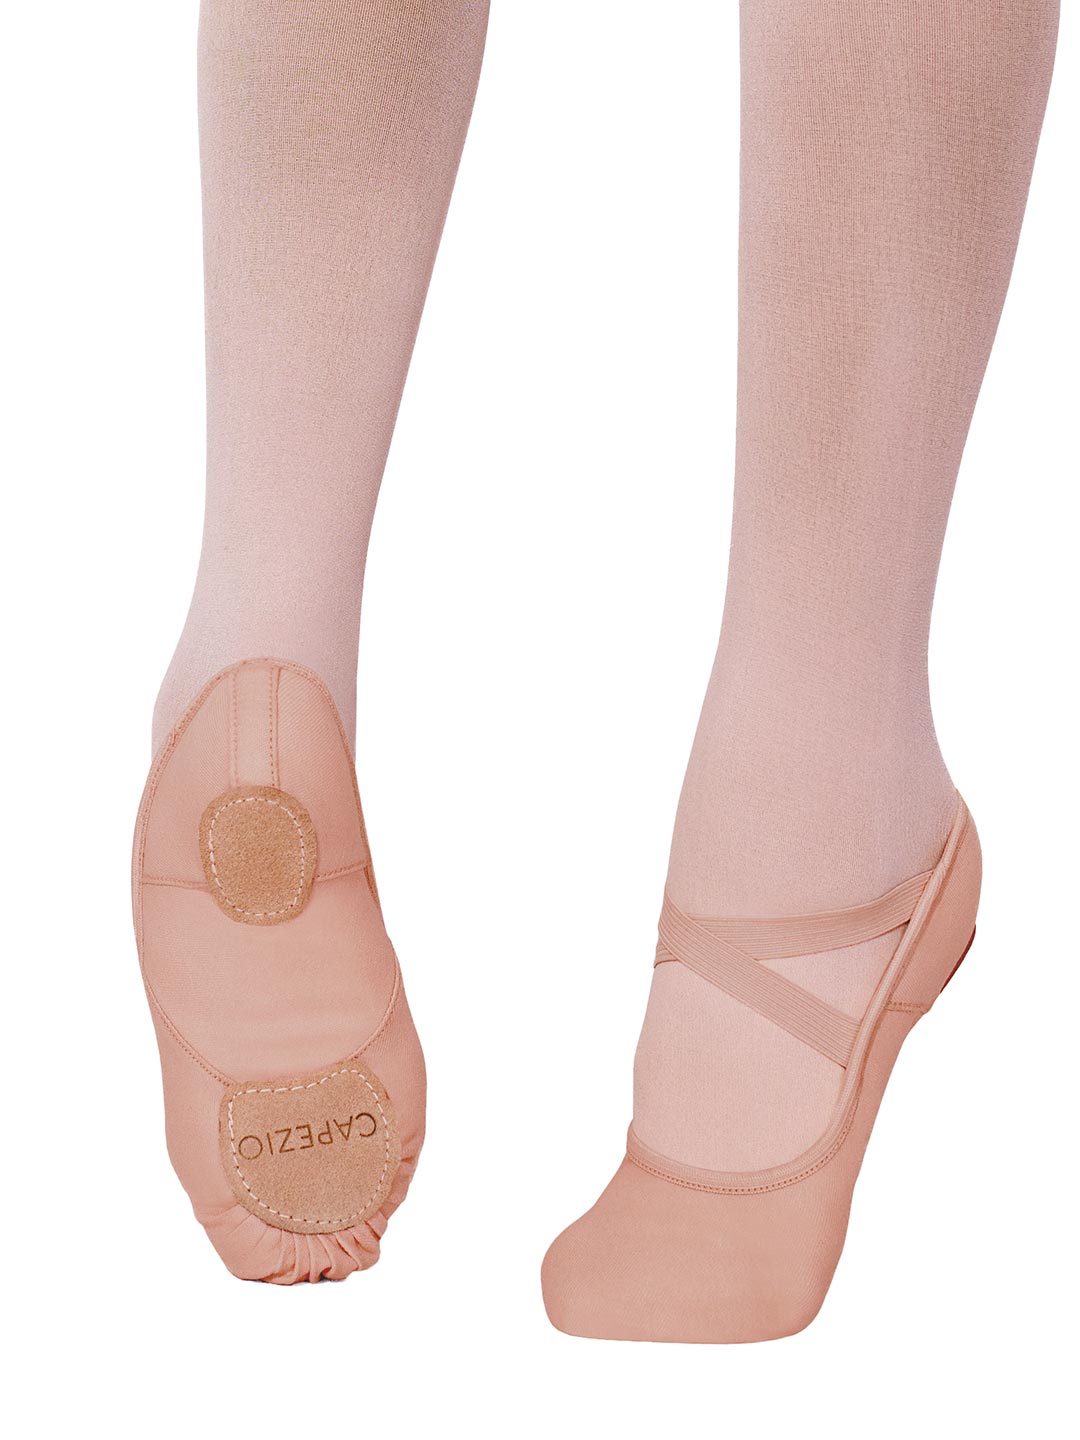 Adult Extend Seamless Barefoot Ballet Shoes by Capezio : H22U Capezio ,  On Stage Dancewear, Capezio Authorized Dealer.